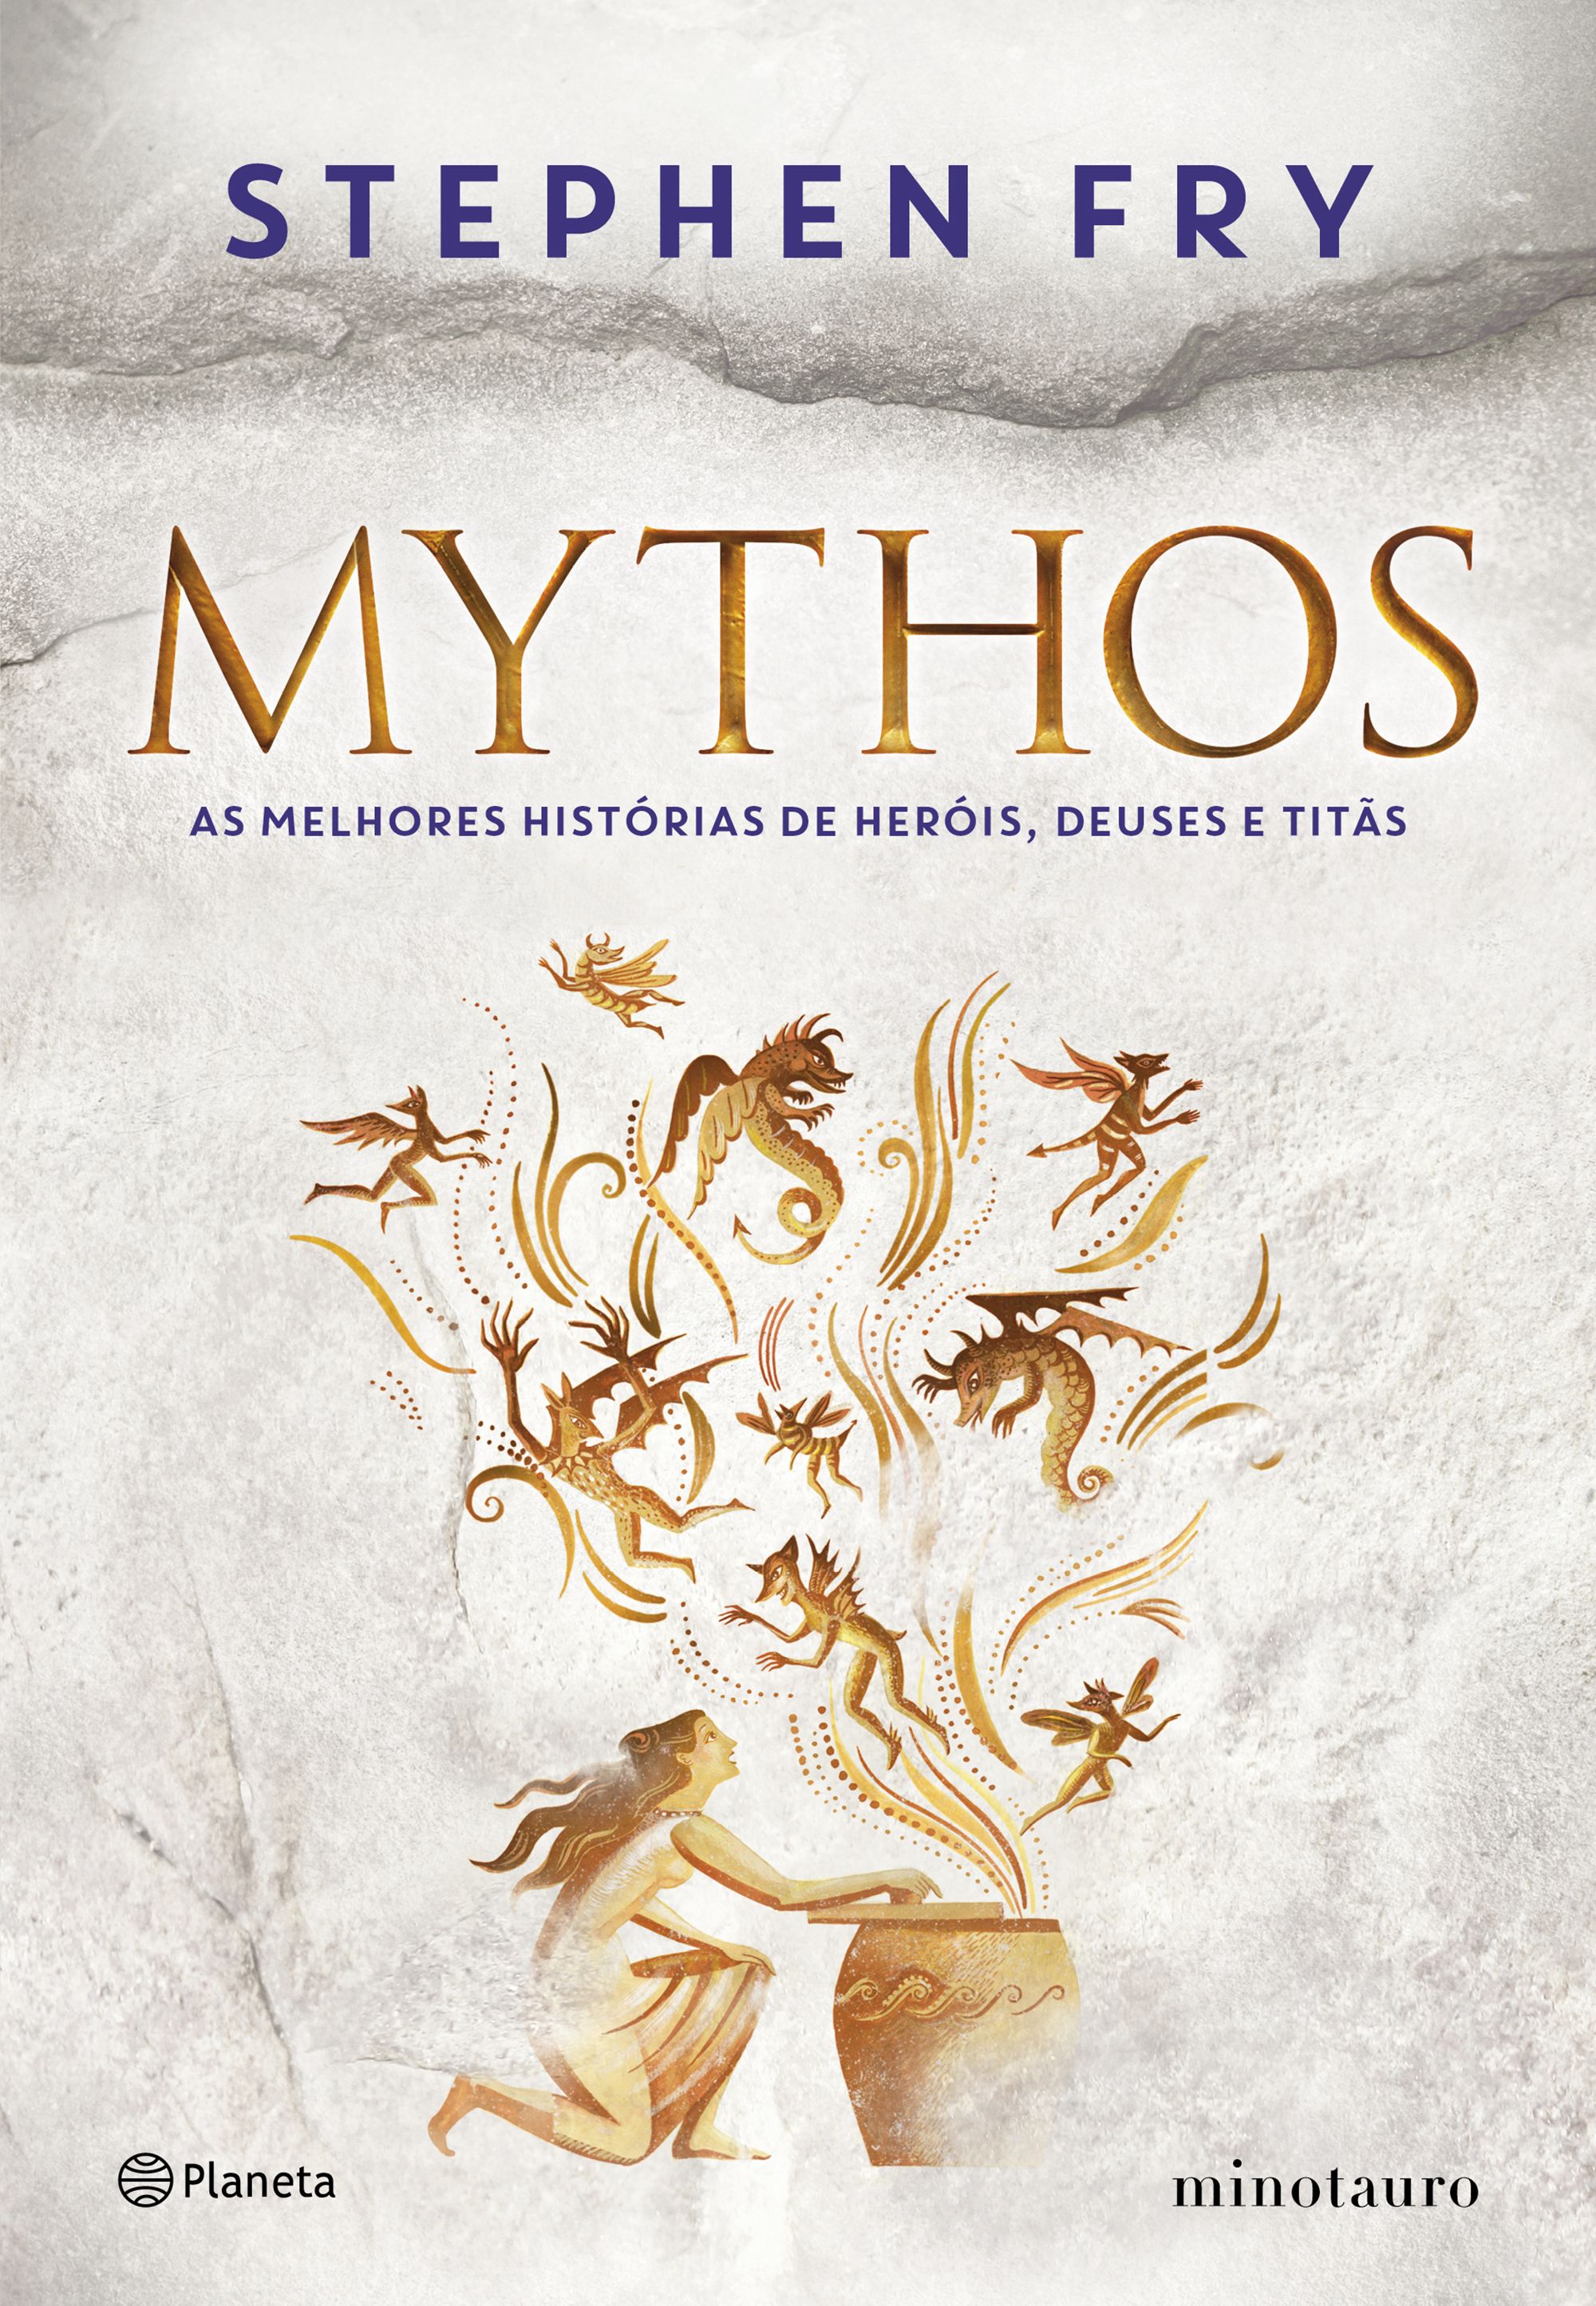 Garotas Geeks Dica De Livro Para Quem Gosta De Mitologia Grega Mythos